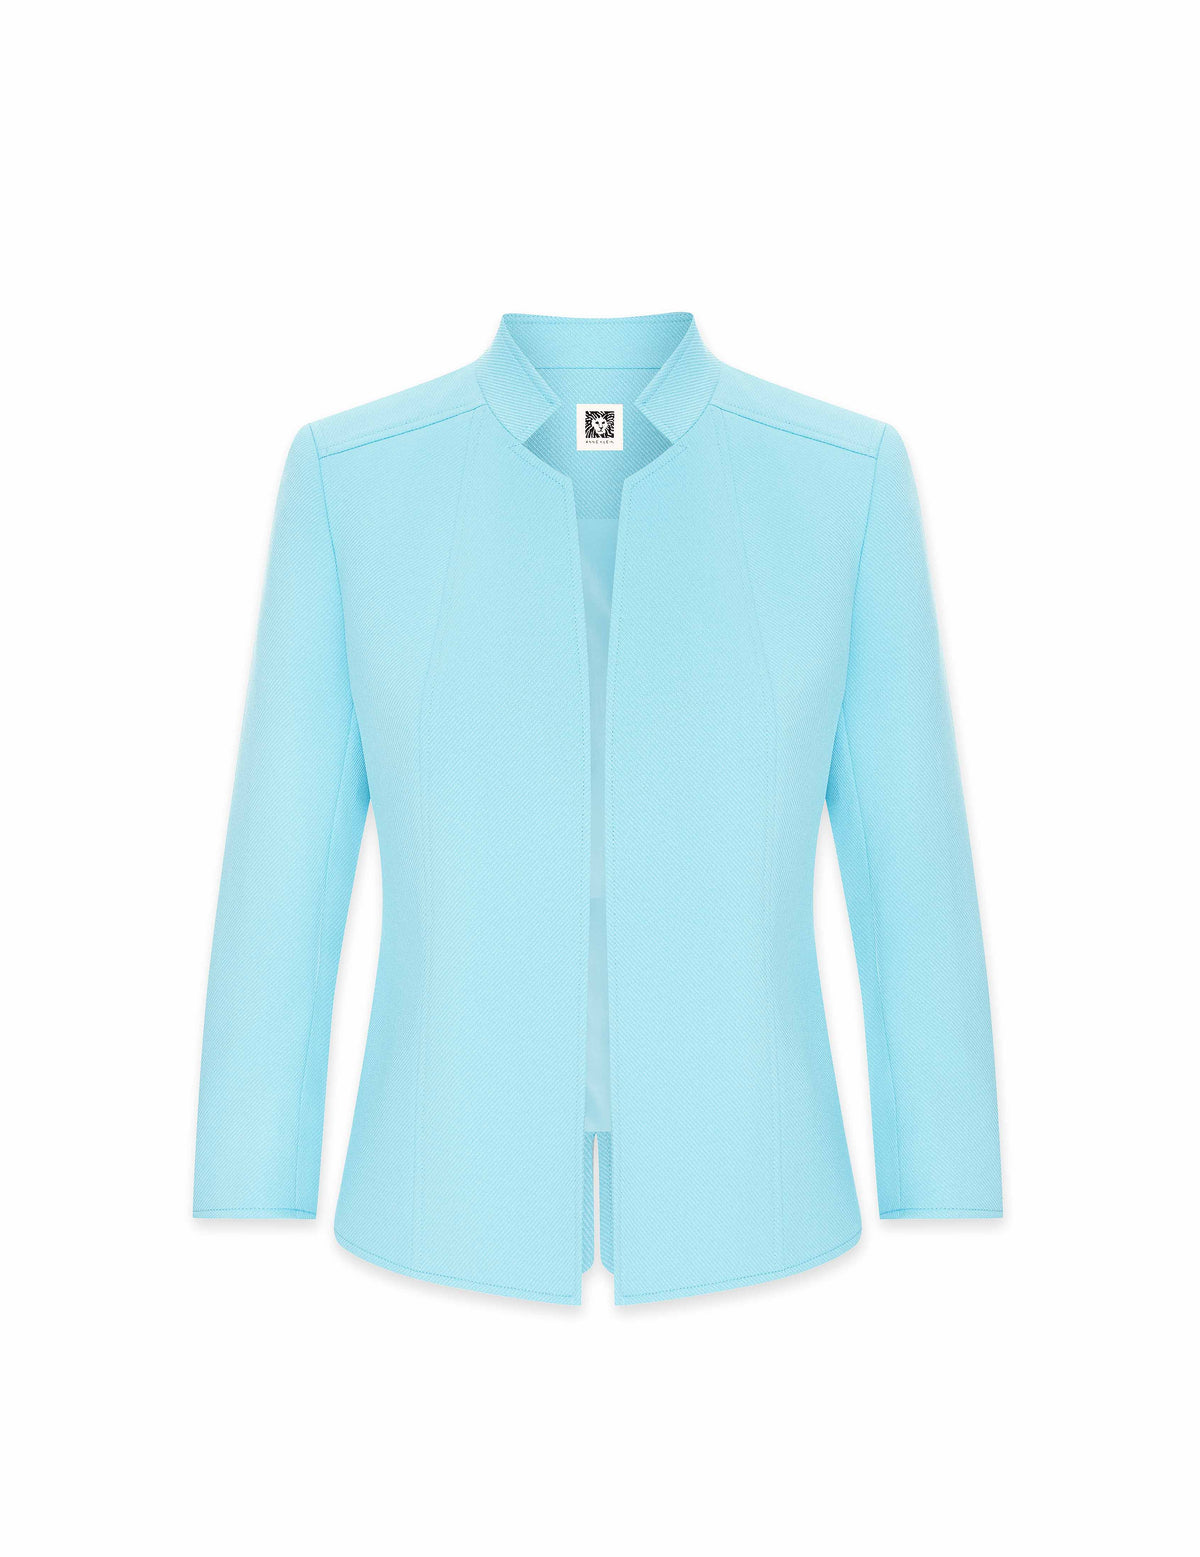 Anne Klein Siren Blue Ridge Crest Cropped Collar Jacket- Clearance